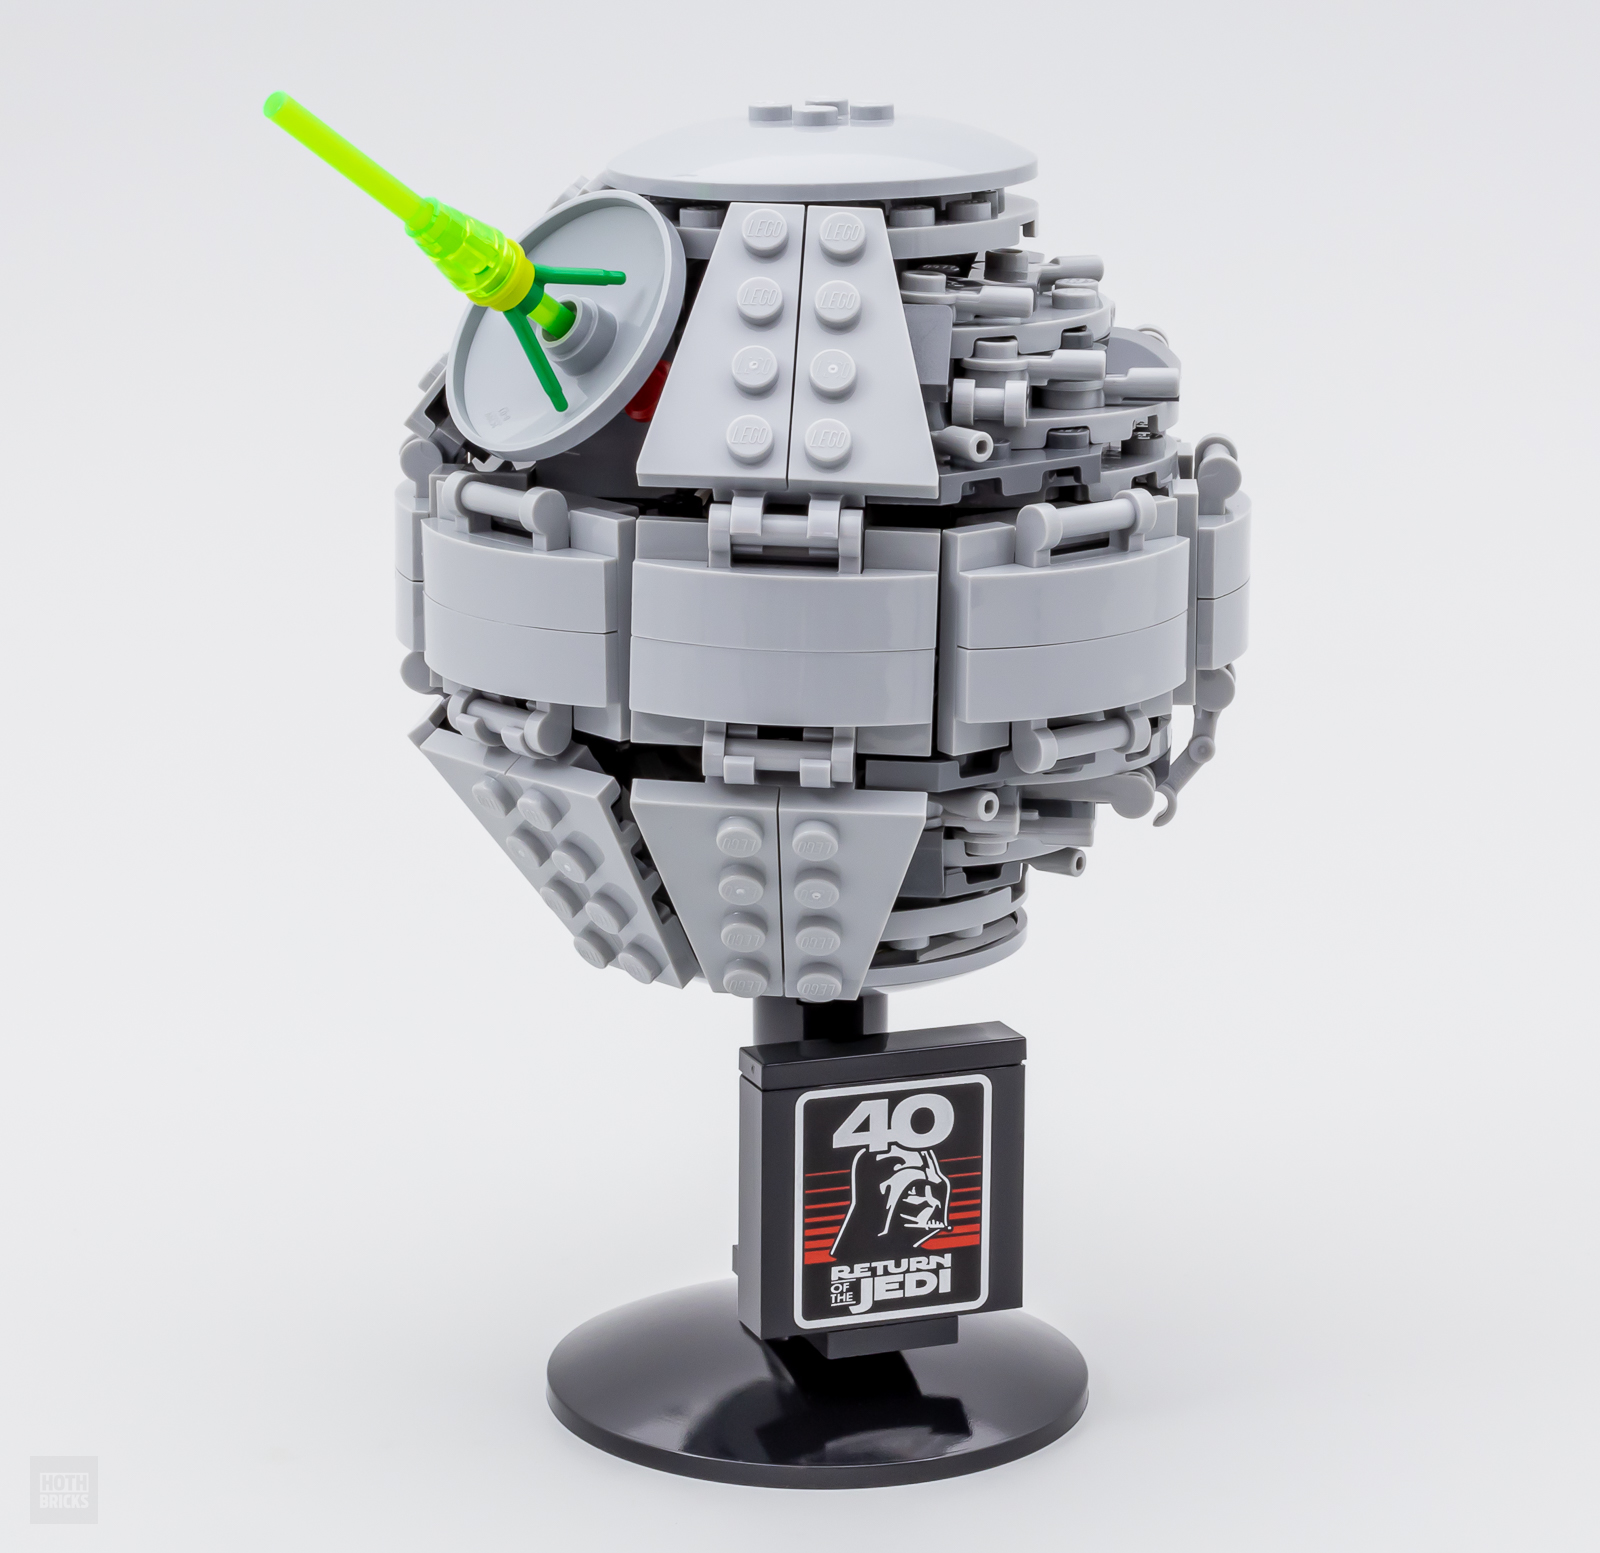 fest gå på indkøb Uartig ▻ Review: LEGO Star Wars 40591 Death Star II - HOTH BRICKS